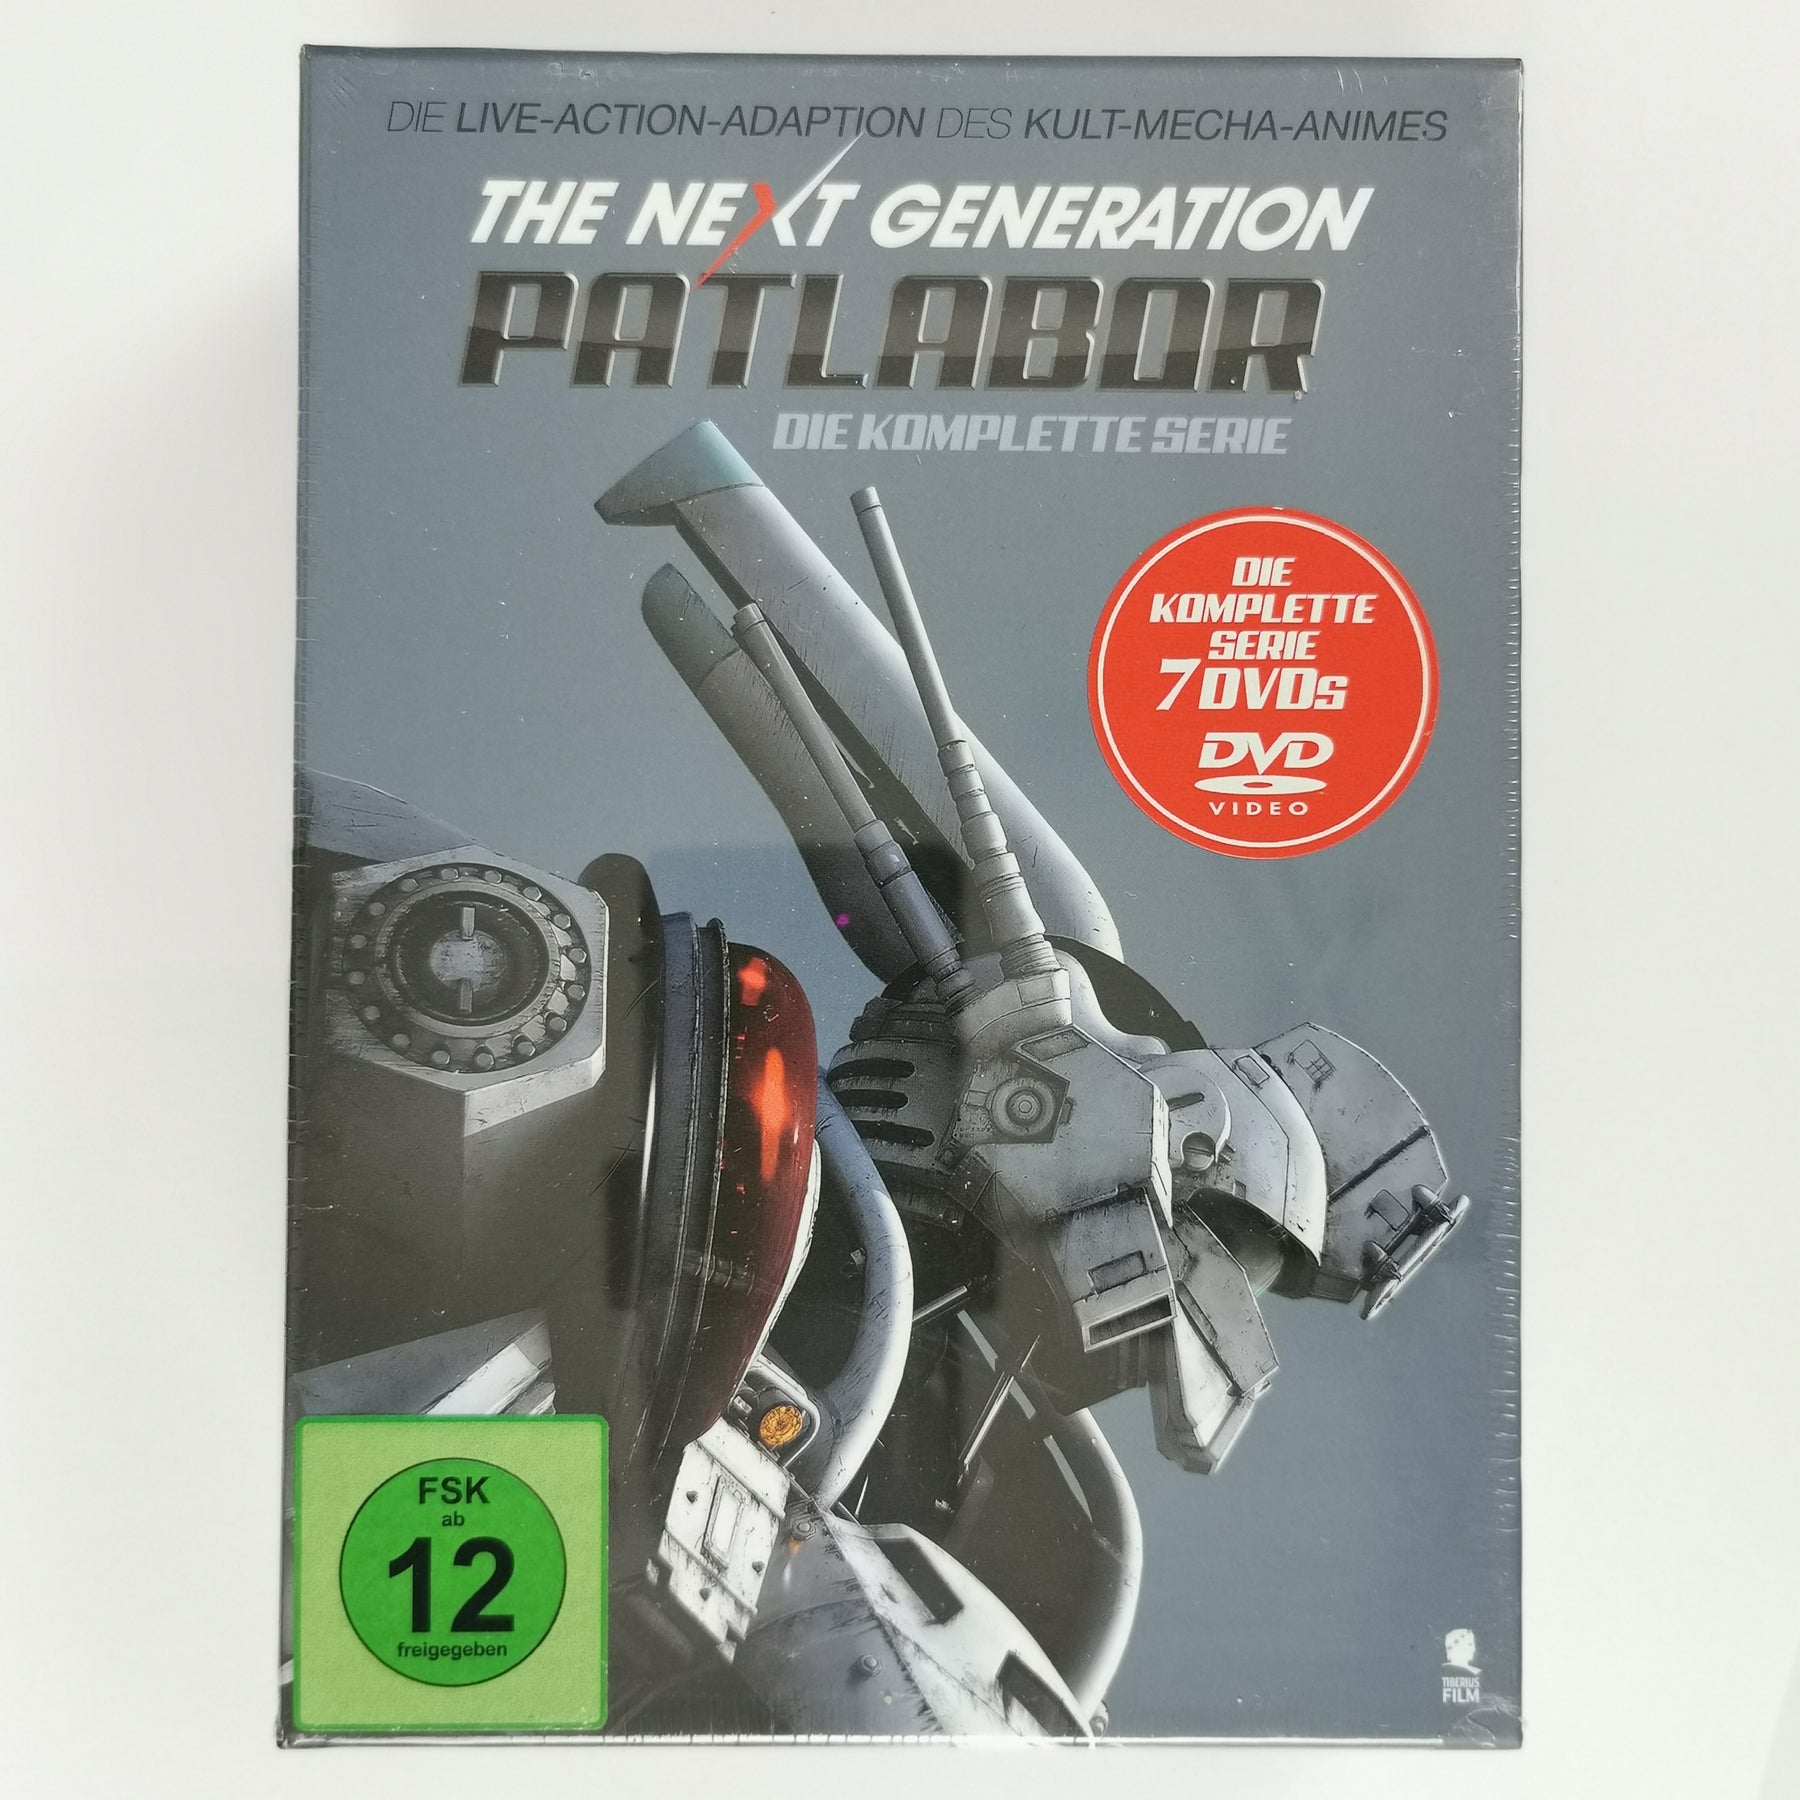 The Next Generation: Patlabor [7DVDs]